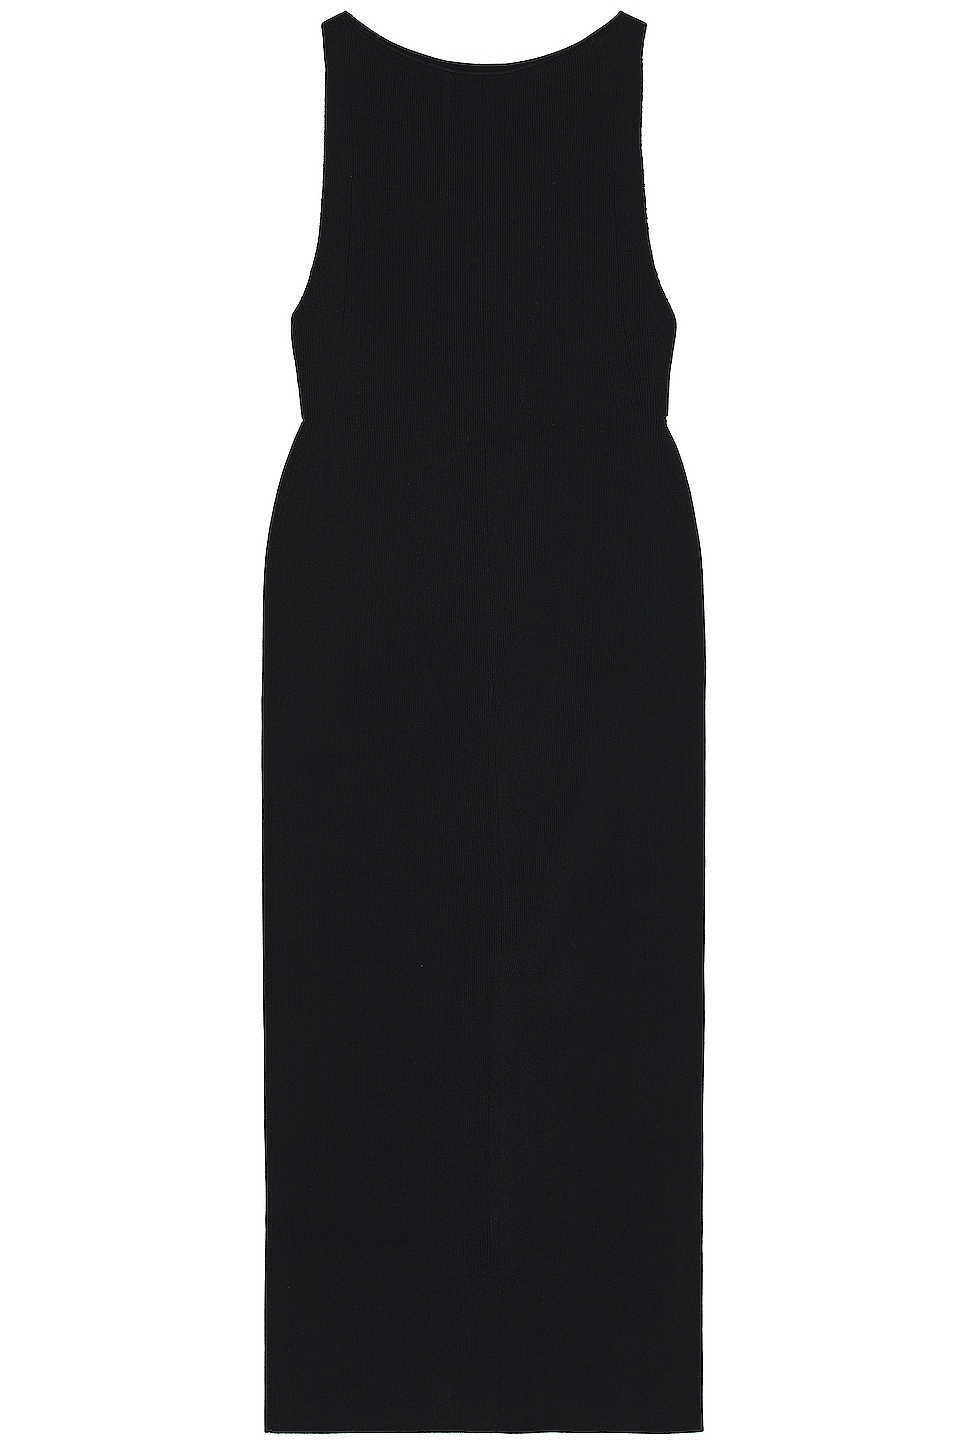 Image 1 of KHAITE Evelyn Dress in Black